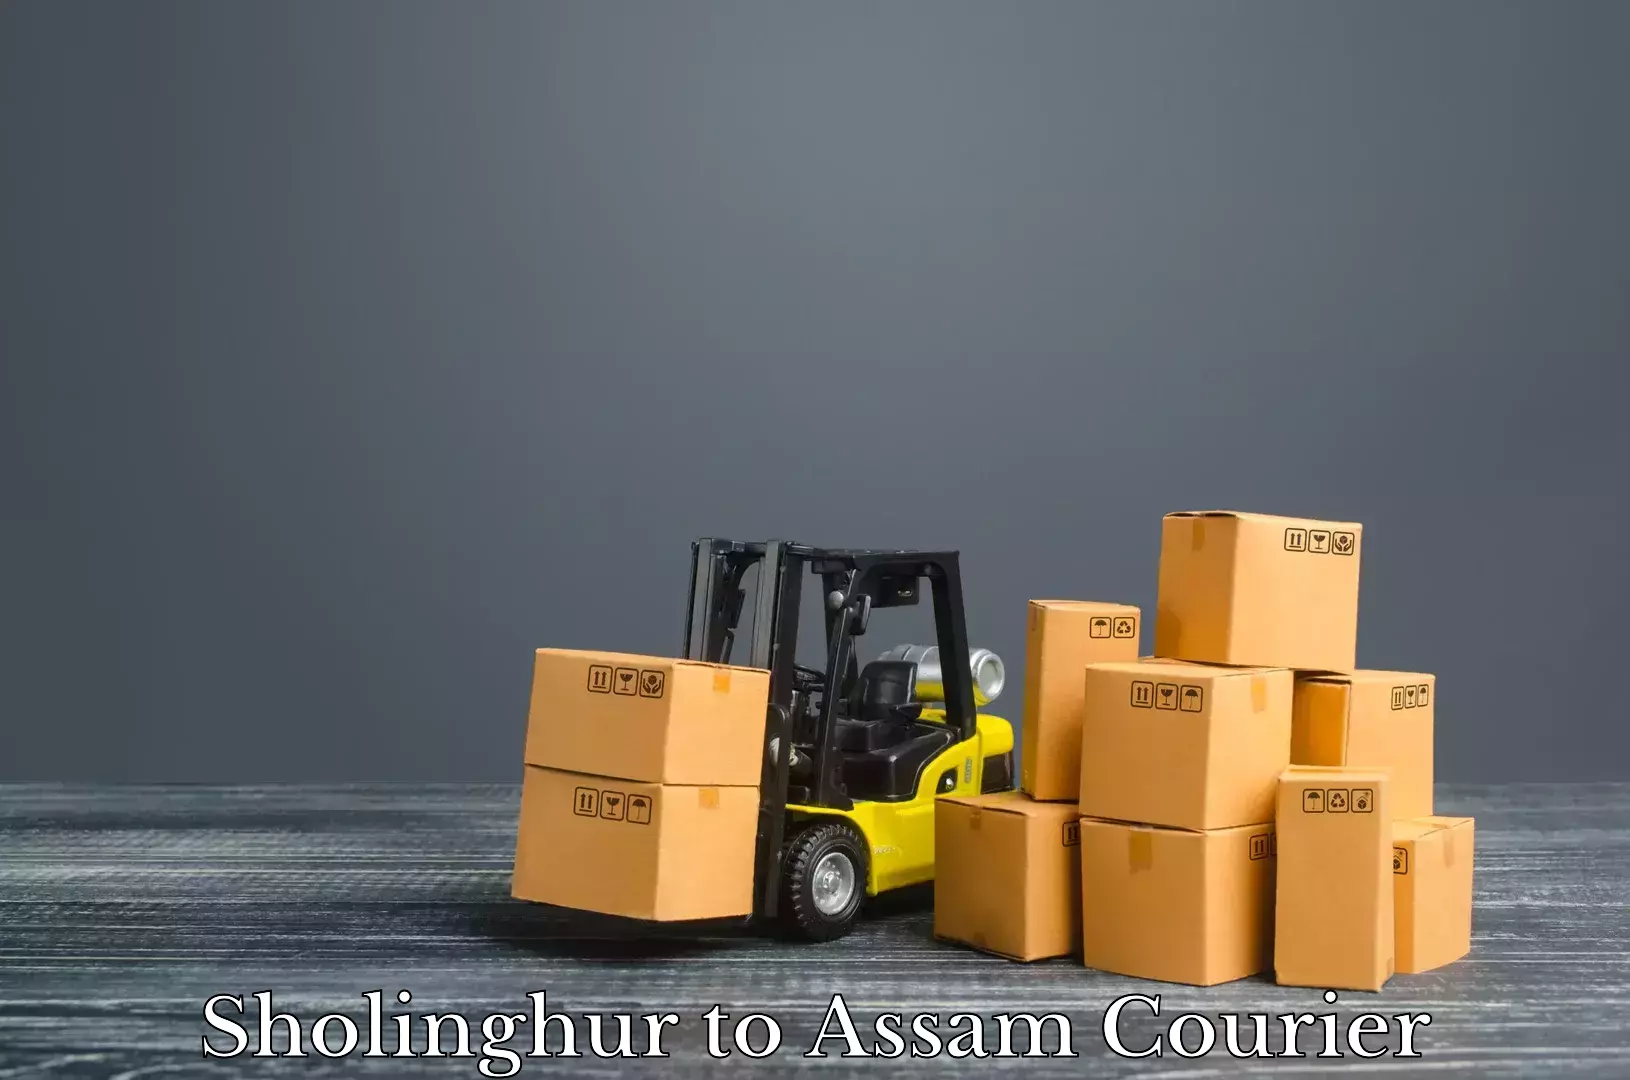 Luggage shipment tracking Sholinghur to Demow